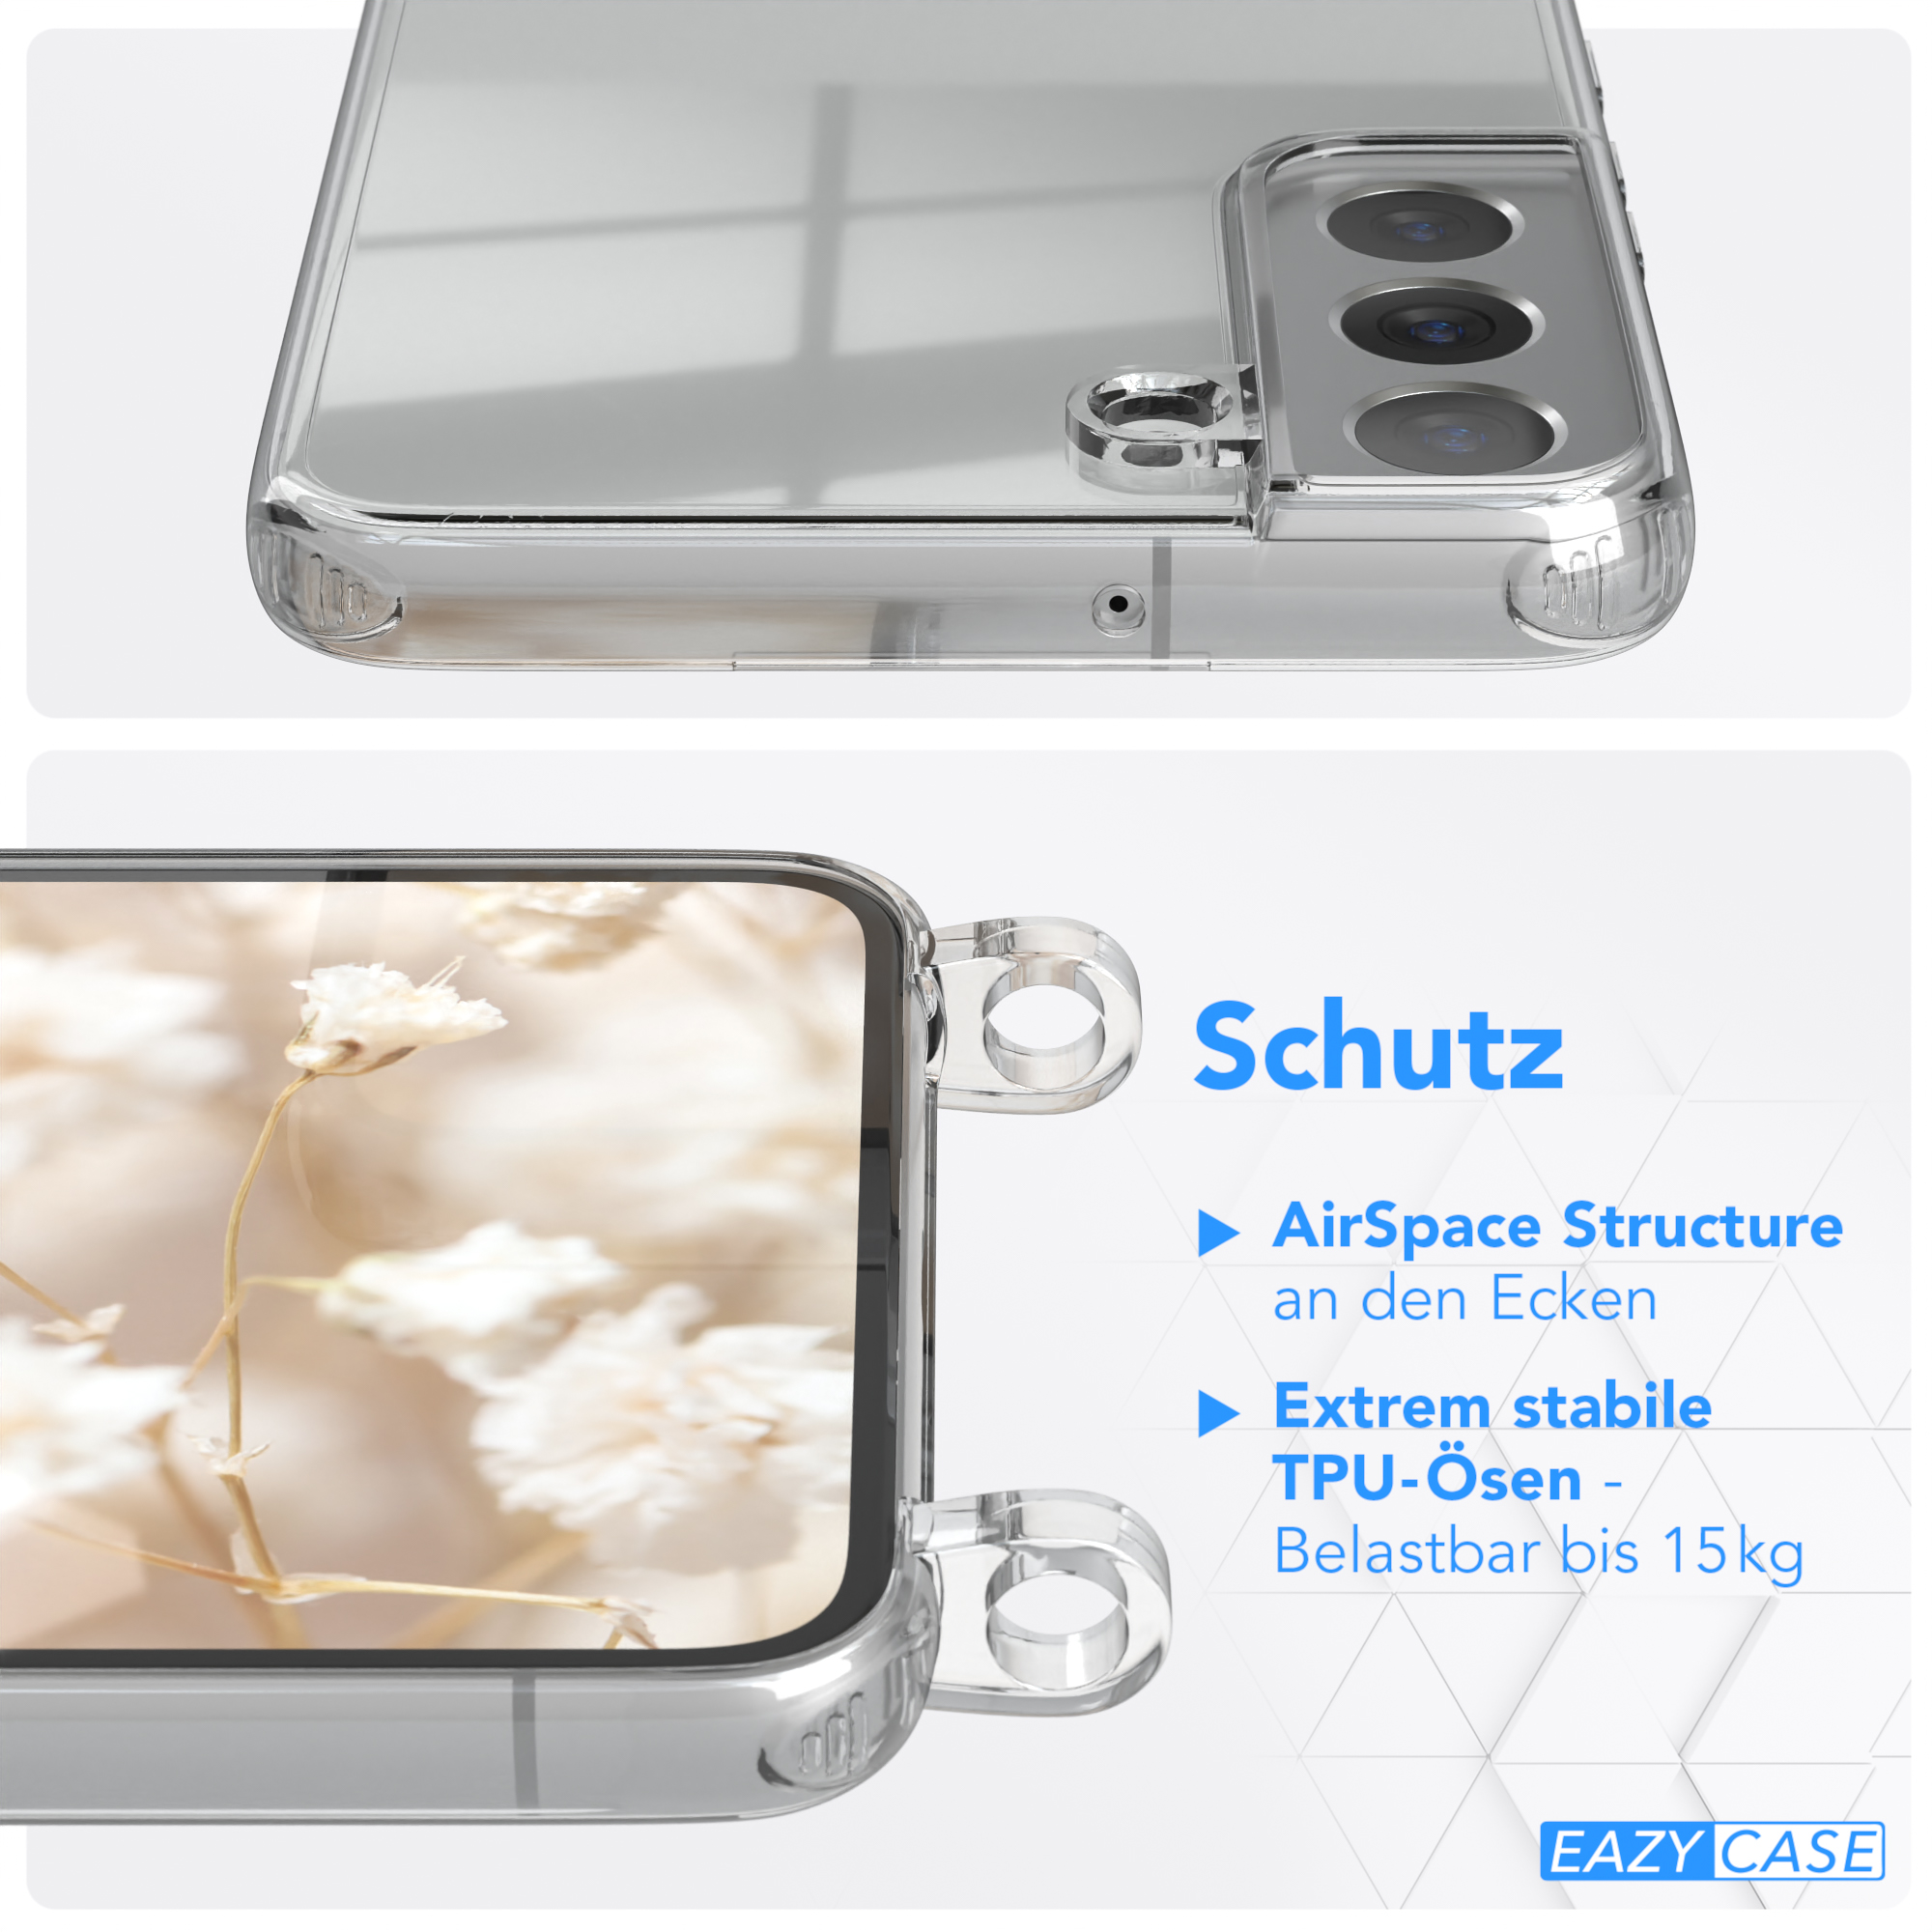 S22 CASE Samsung, Kordel Style, / 5G, Handyhülle mit EAZY Blau Galaxy Umhängetasche, Plus Pink Transparente Boho